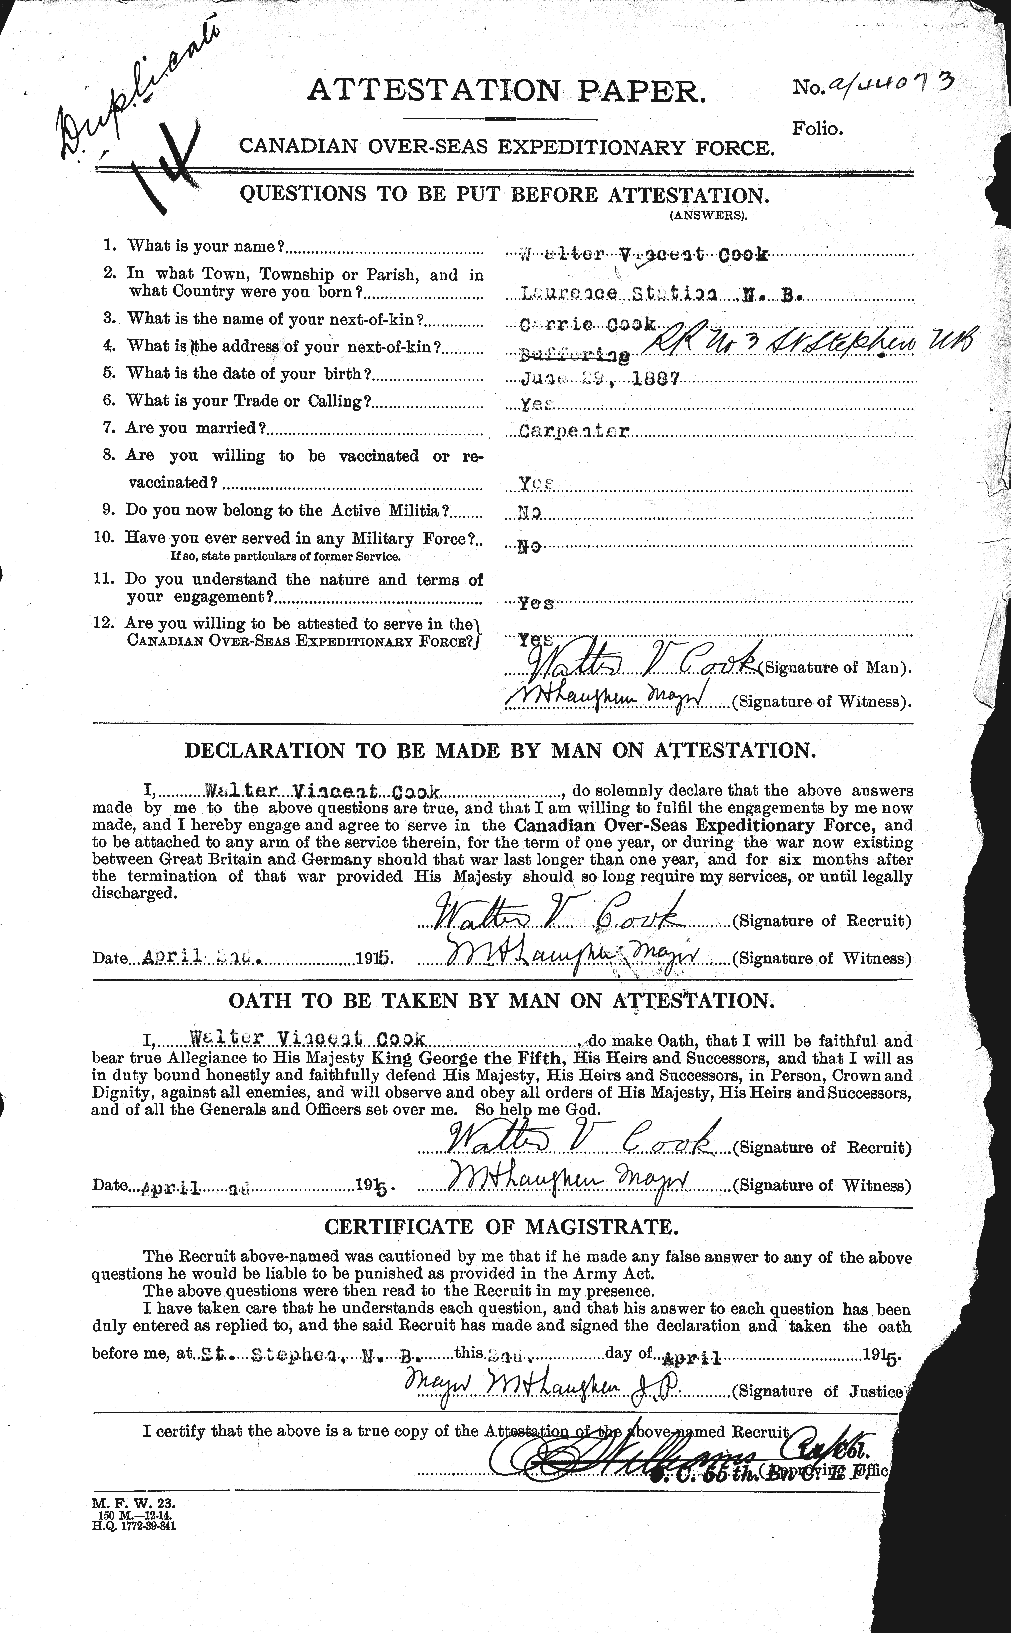 Dossiers du Personnel de la Première Guerre mondiale - CEC 074848a